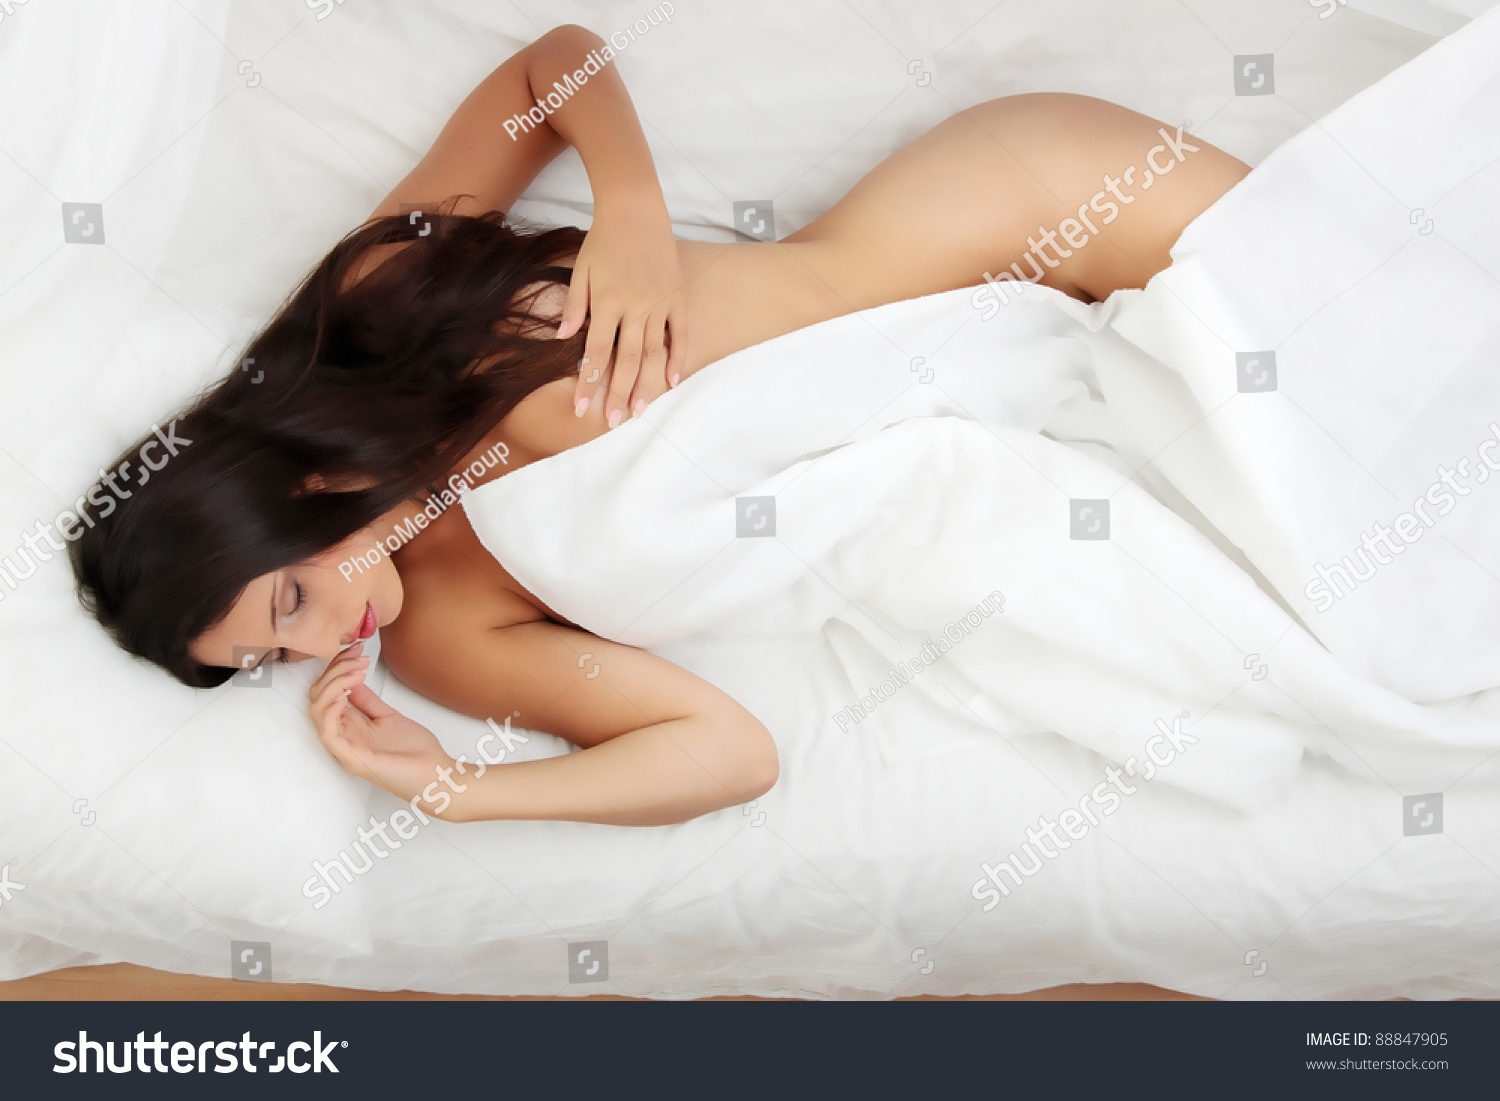 Раздетая девка с крупными булками улеглась в постель